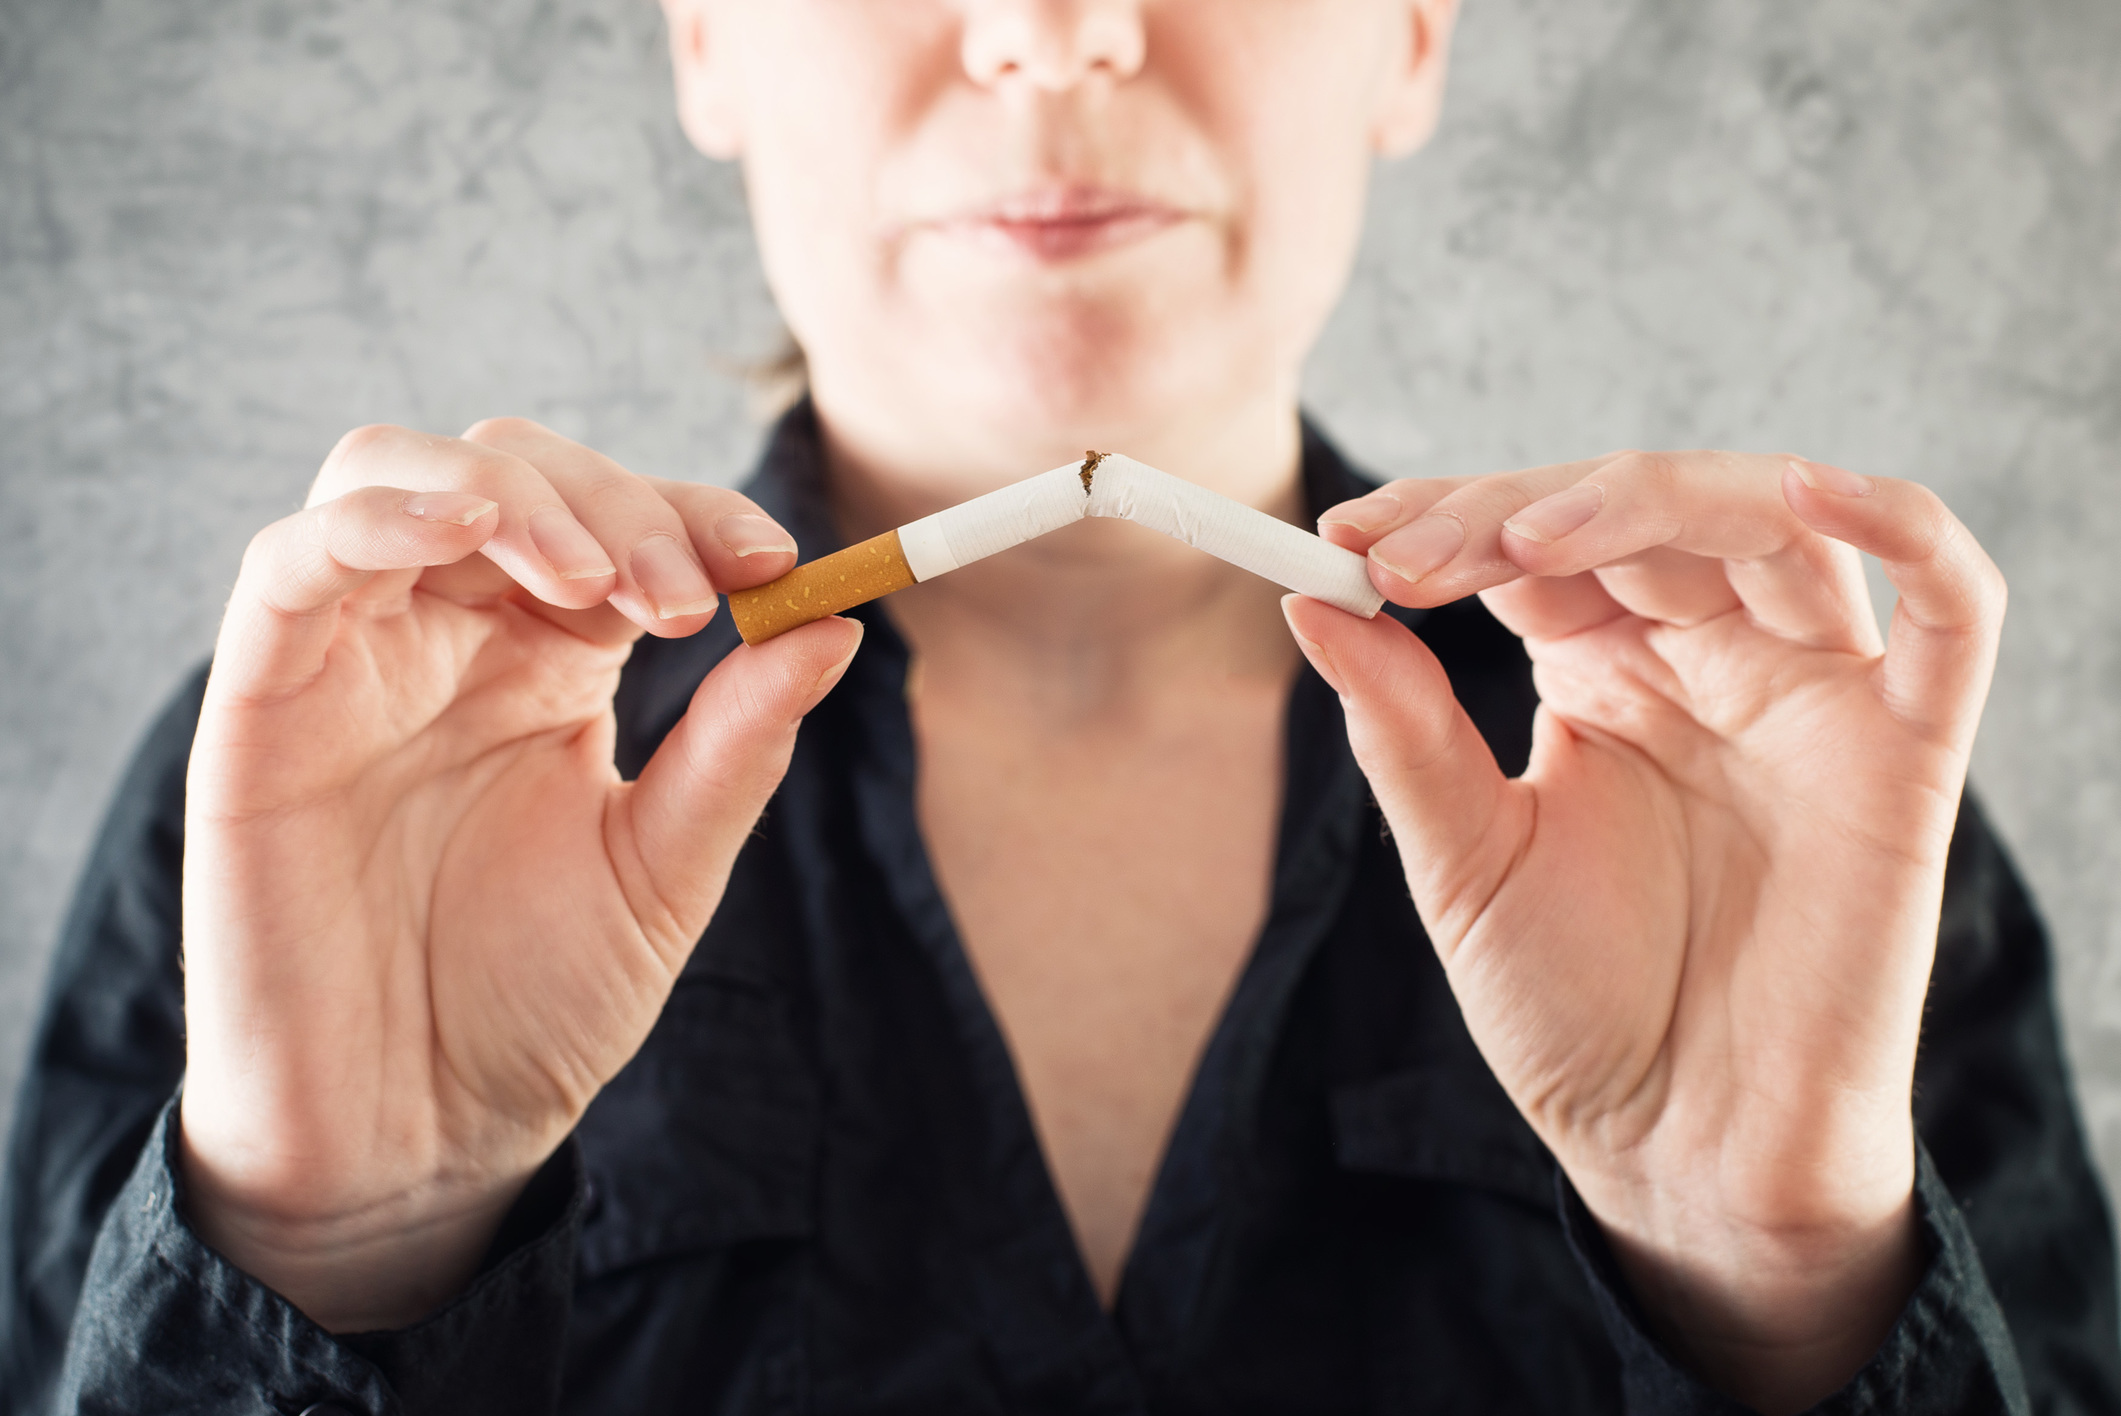 Ezek után tuti leteszi a cigit: Bizonyították, hogy 150 mutációt okoz  minden tüdősejtben a dohányzás - Blikk